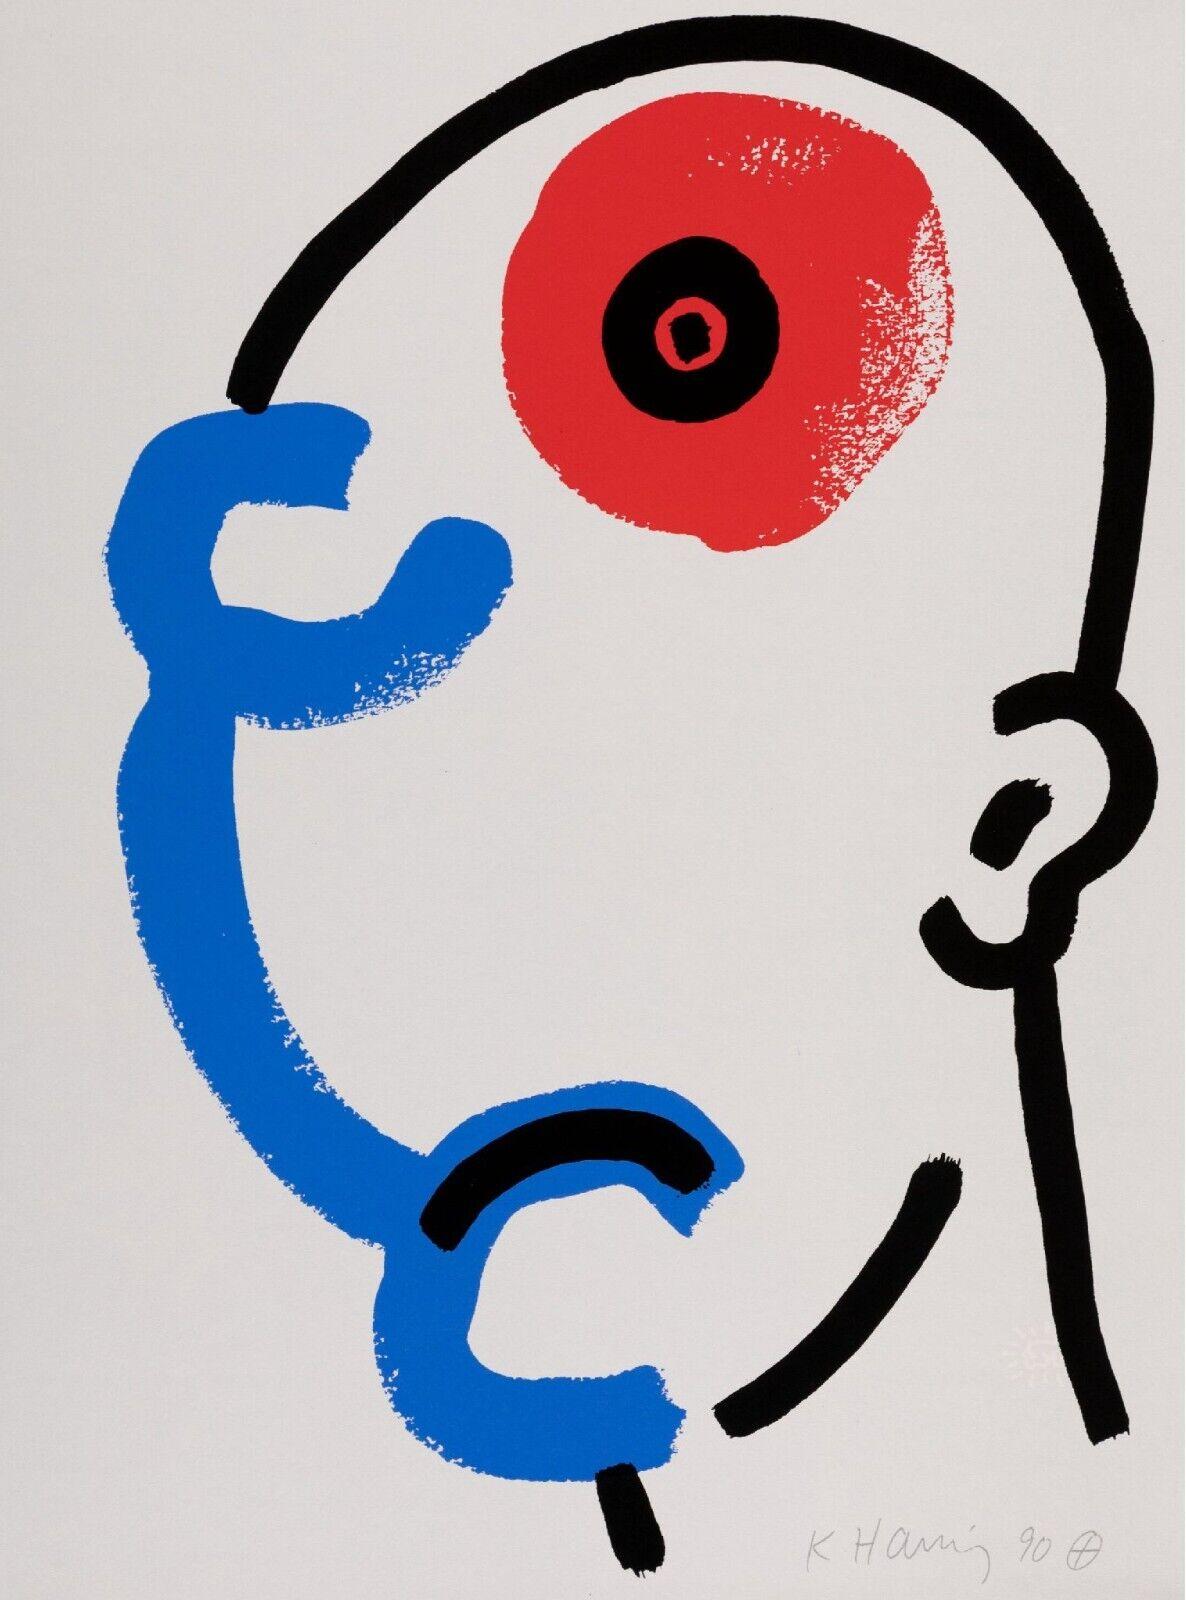 Artiste : Keith Haring
Titre : Sans titre  (L'histoire du rouge et du bleu)
Édition : Numérotée De l'édition limitée à 90 exemplaires
Support : Sérigraphie originale en couleurs sur papier
Année : 1989-1990
Signature : Signée dans la plaque par